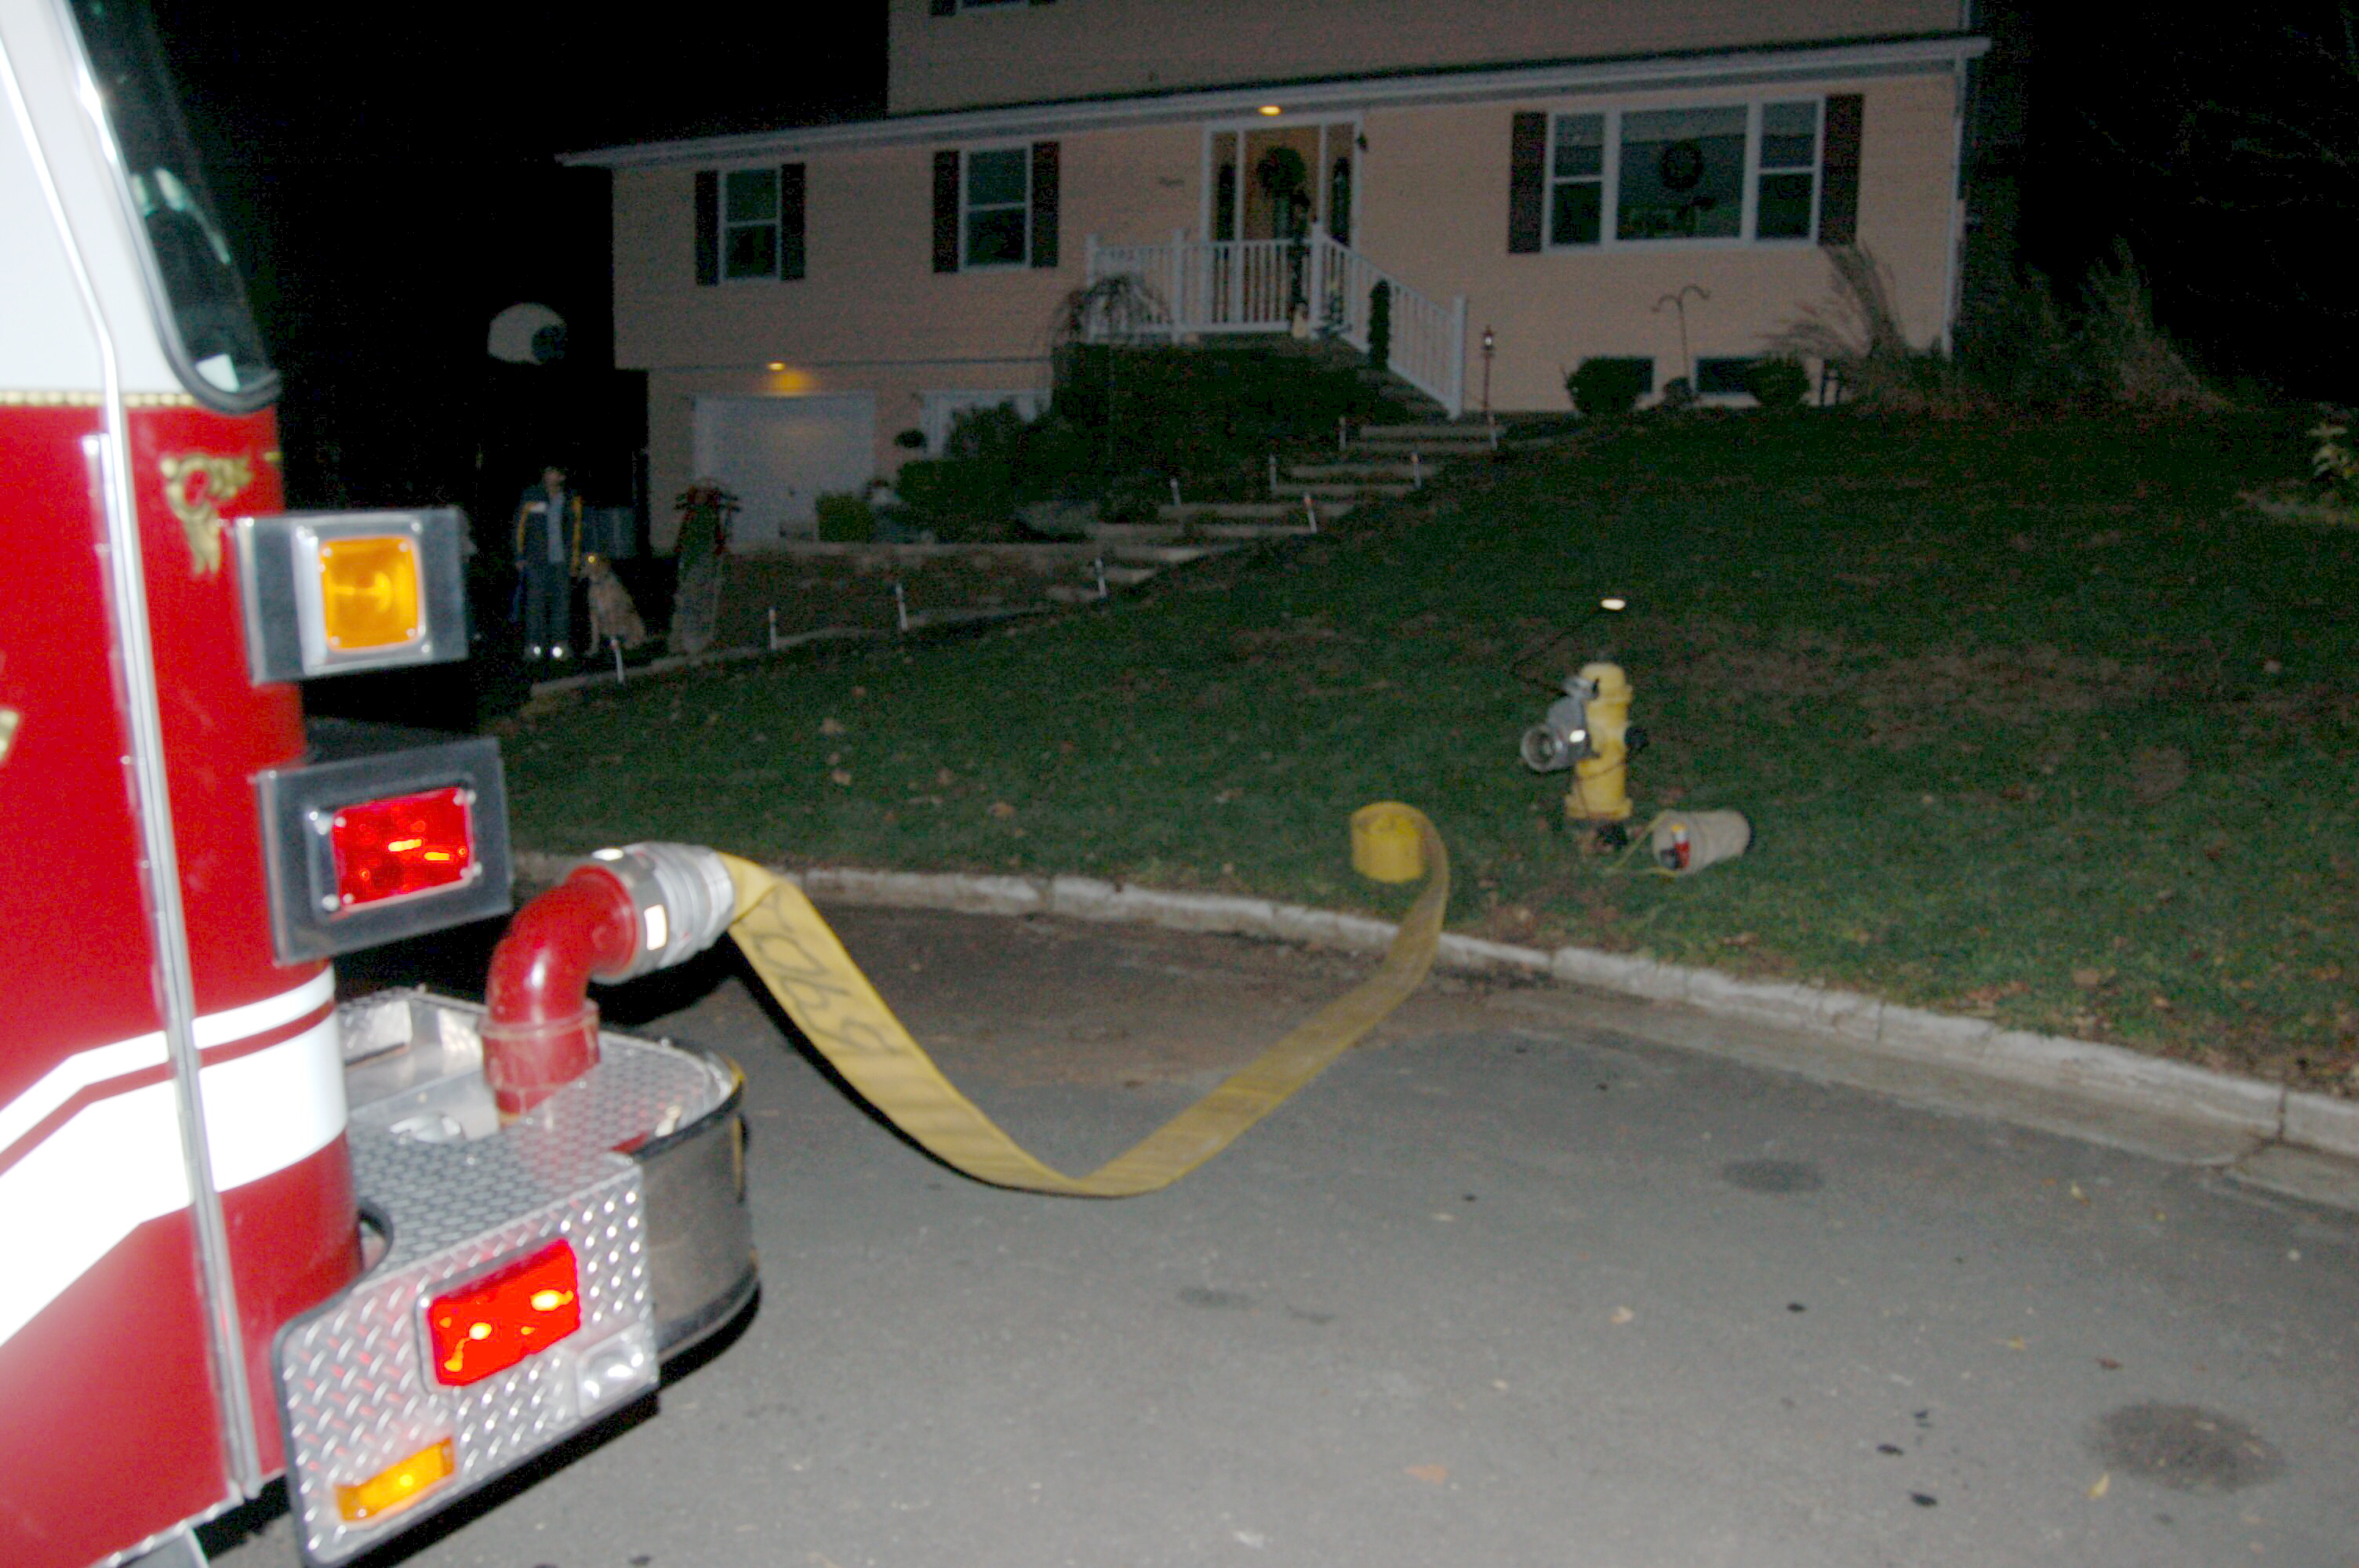 11-29-06  Response - Fire - Greenwood Circle